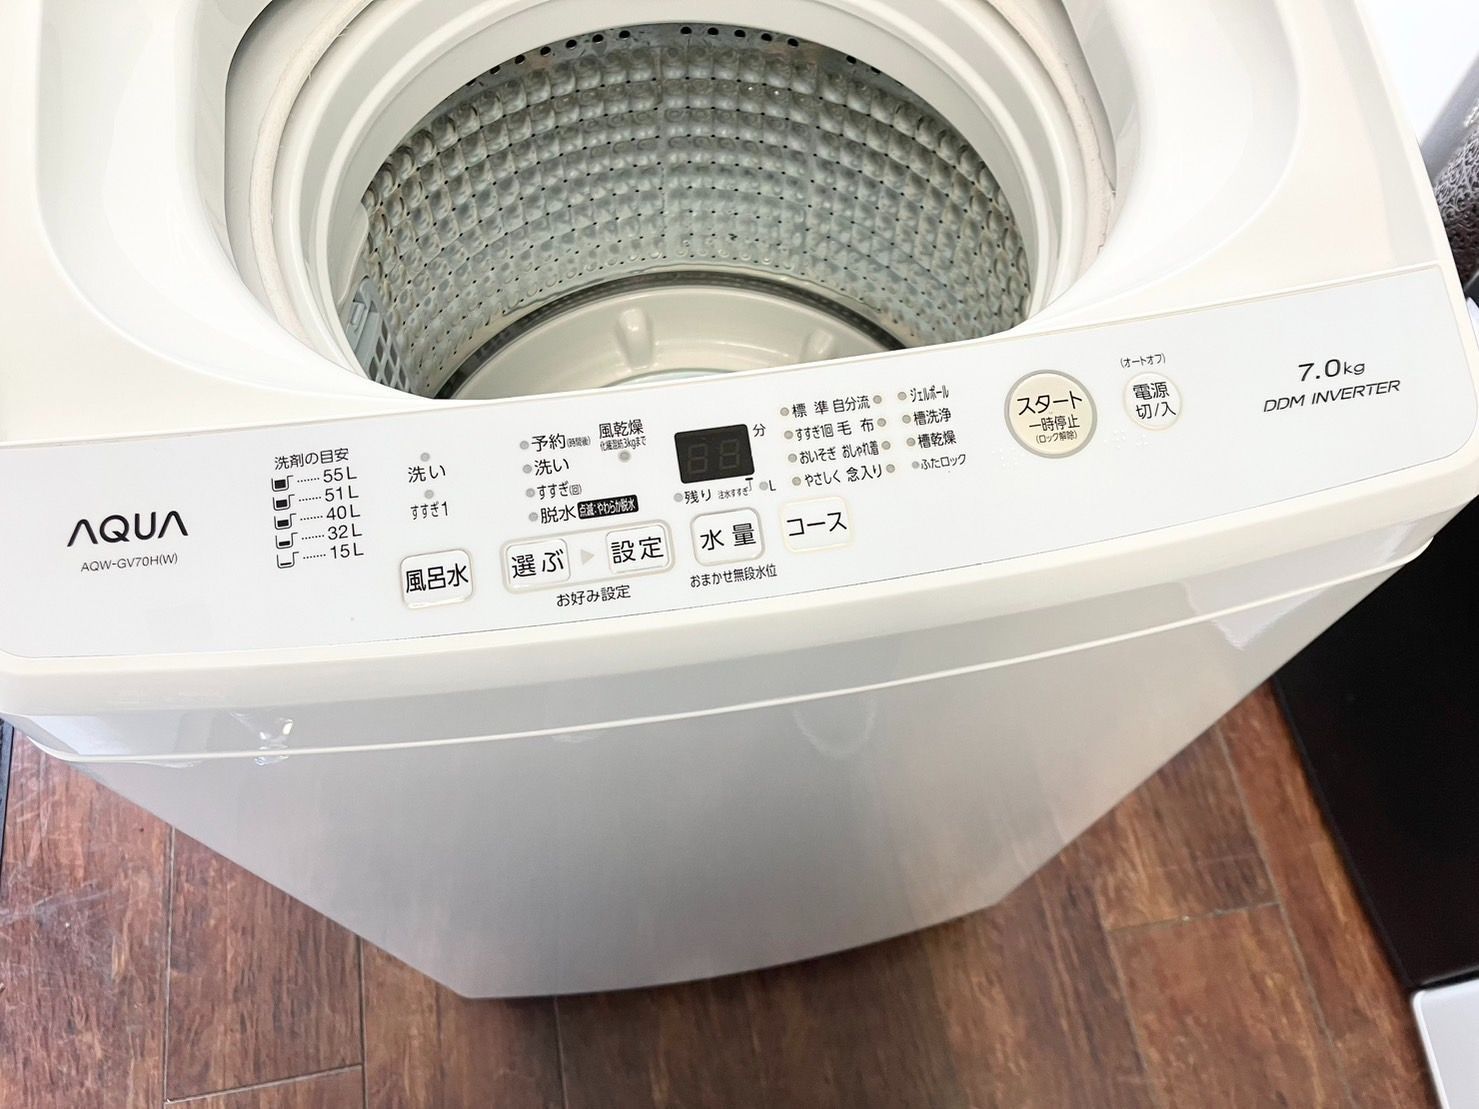 日本アウトレット AQUA AQW-GV70H(W) 洗濯機 2019年式 7kg - 生活家電